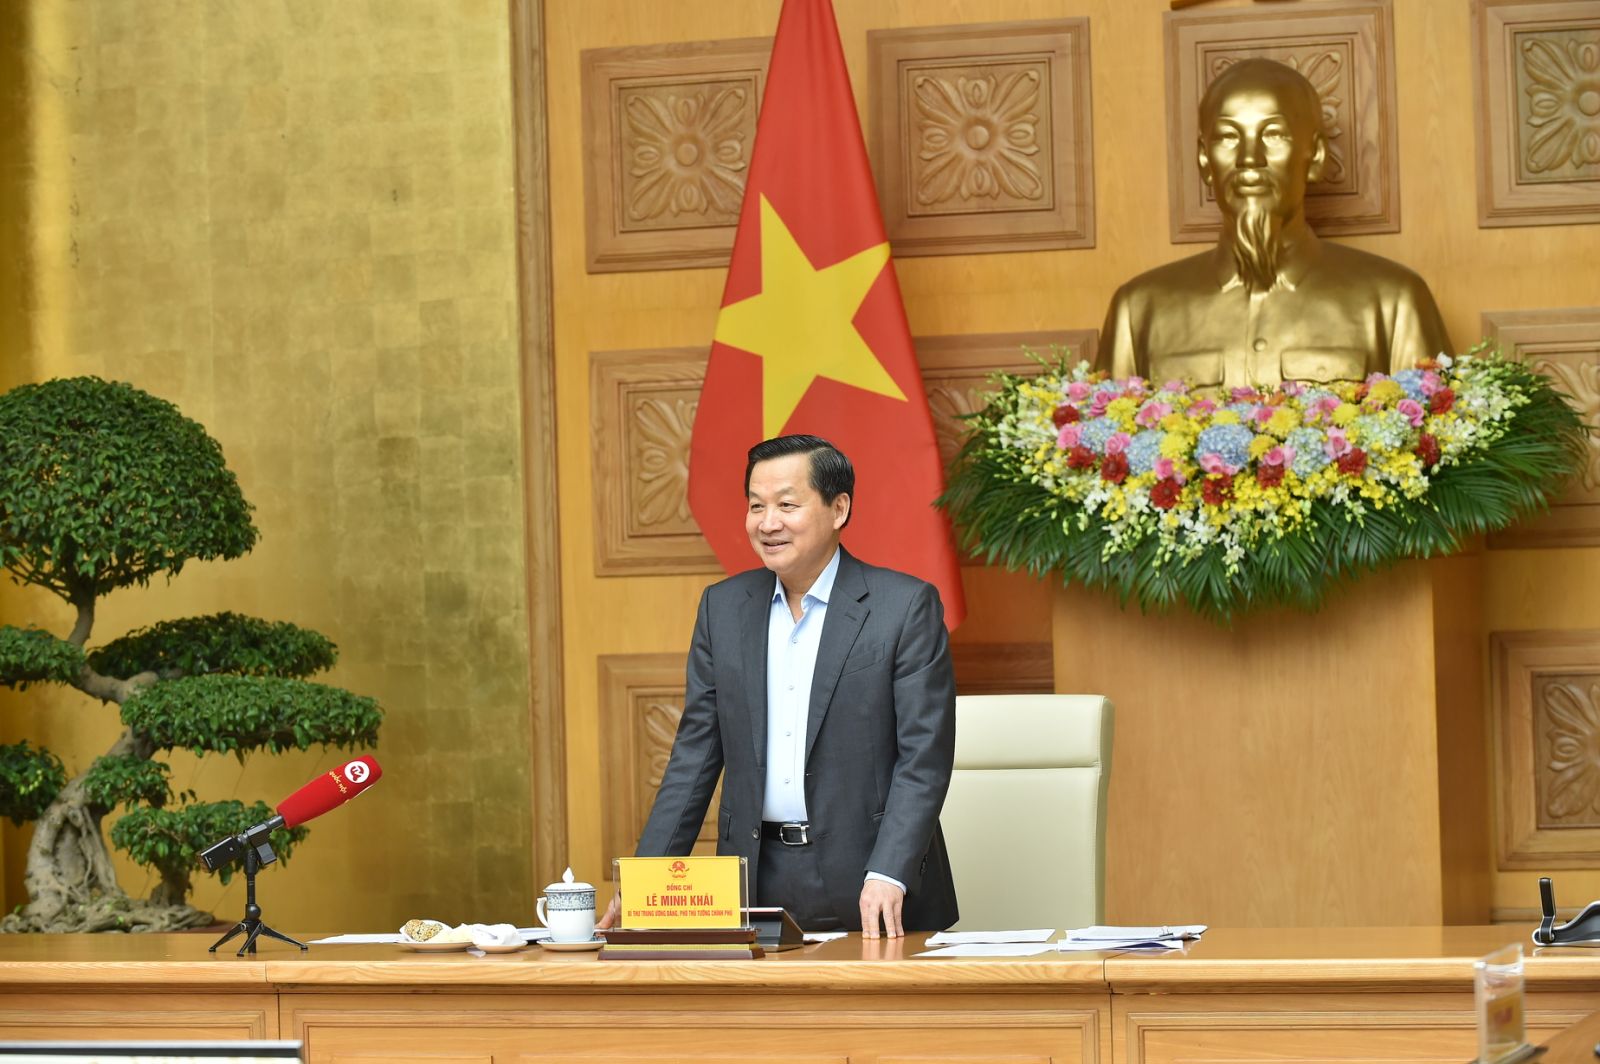 Phó Thủ tướng Lê Minh Khái: Cần tiếp tục hoàn thiện chức năng, nhiệm vụ, mô hình giám sát tài chính